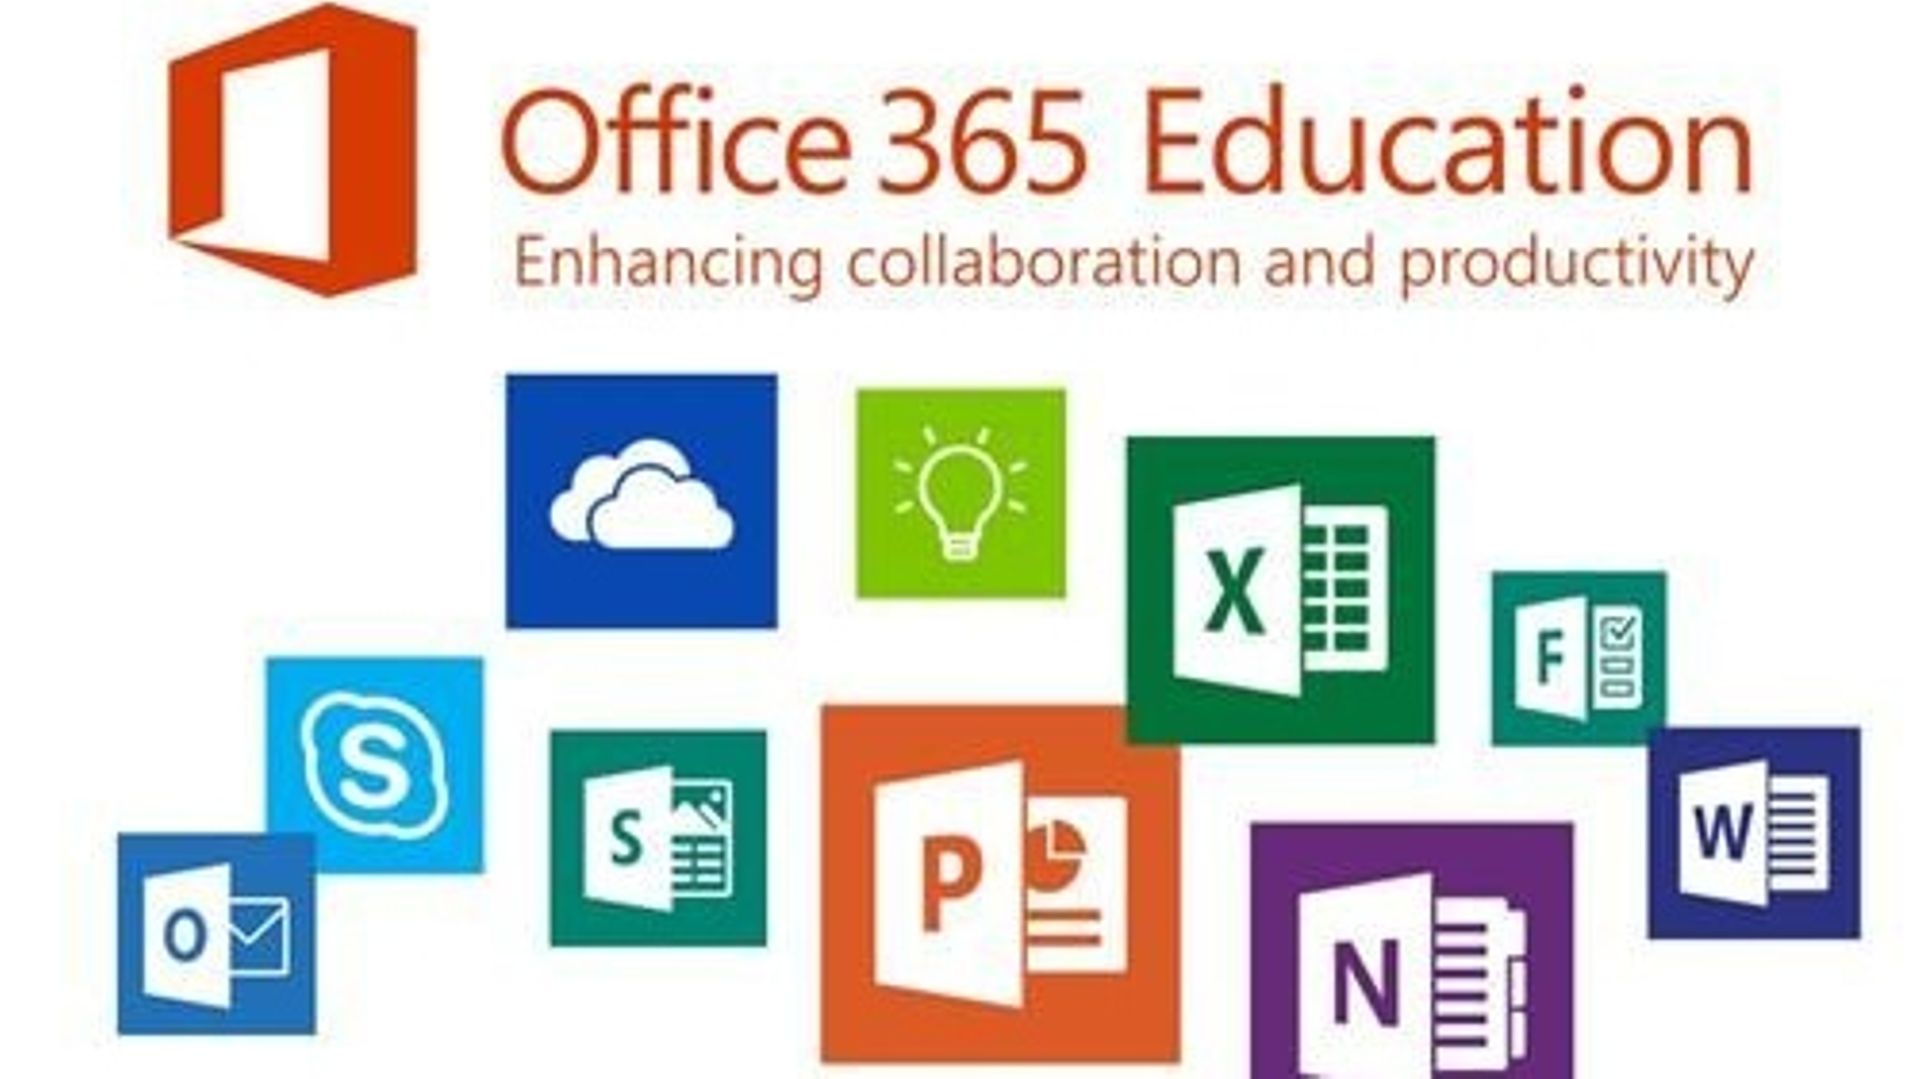 C'est l'ensemble des outils de la suite Office 365 qui a été privilégié par la ville de Bruxelles